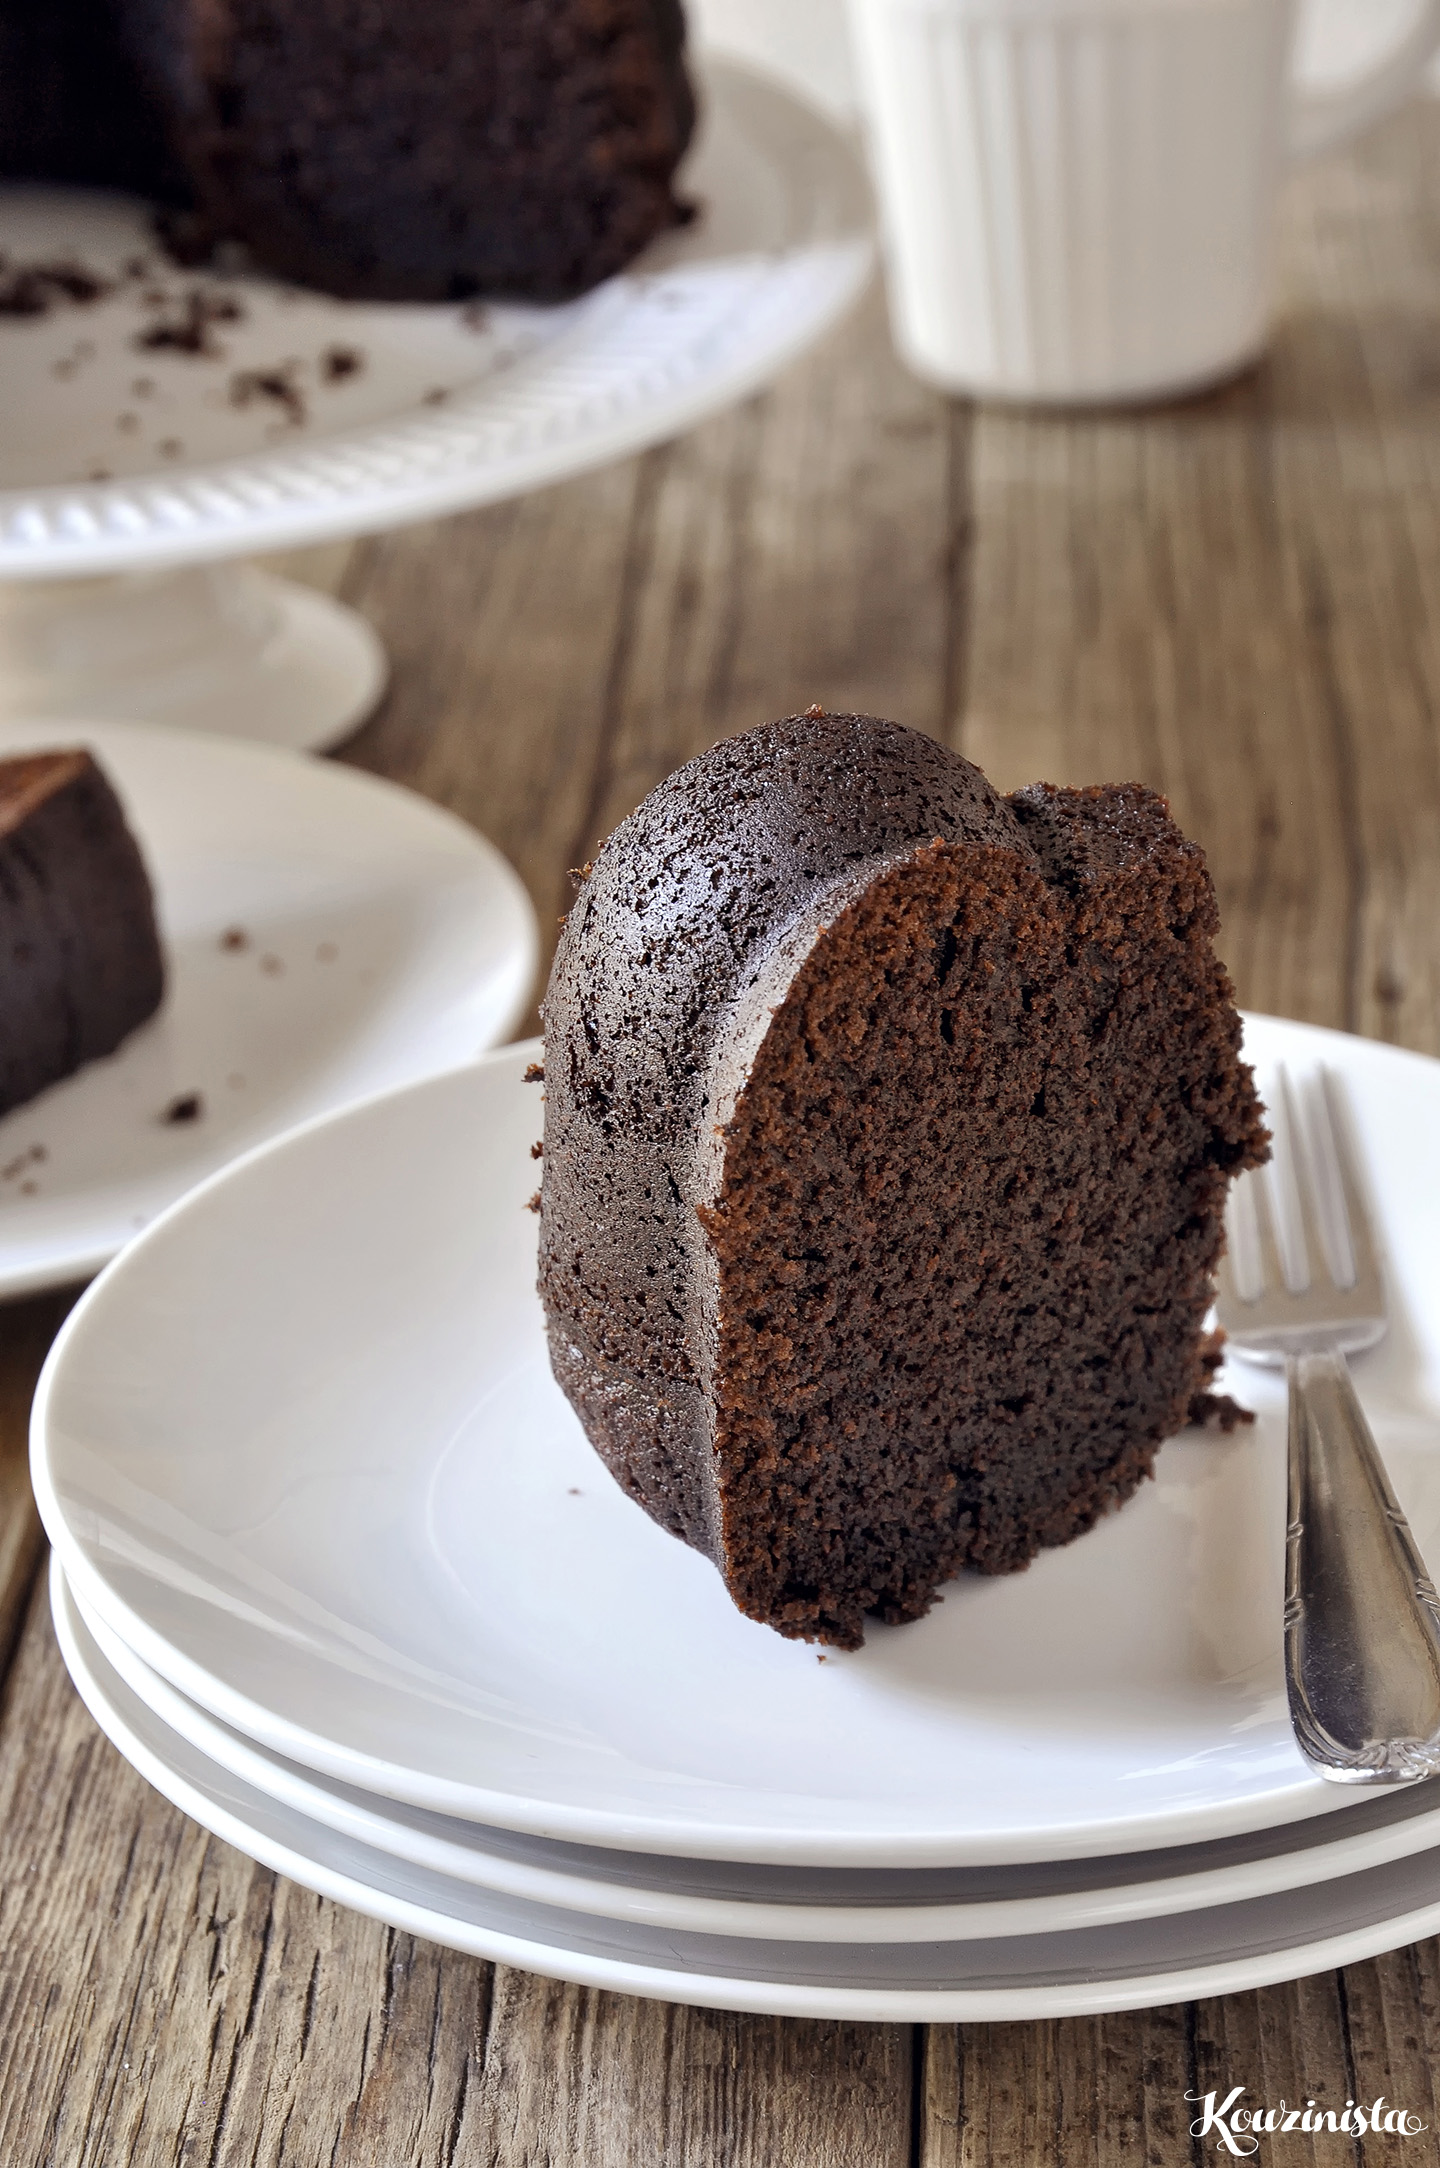 Ονειρεμένο κέικ σοκολάτας που λιώνει στο στόμα / Dreamy chocolate fudge bundt cake